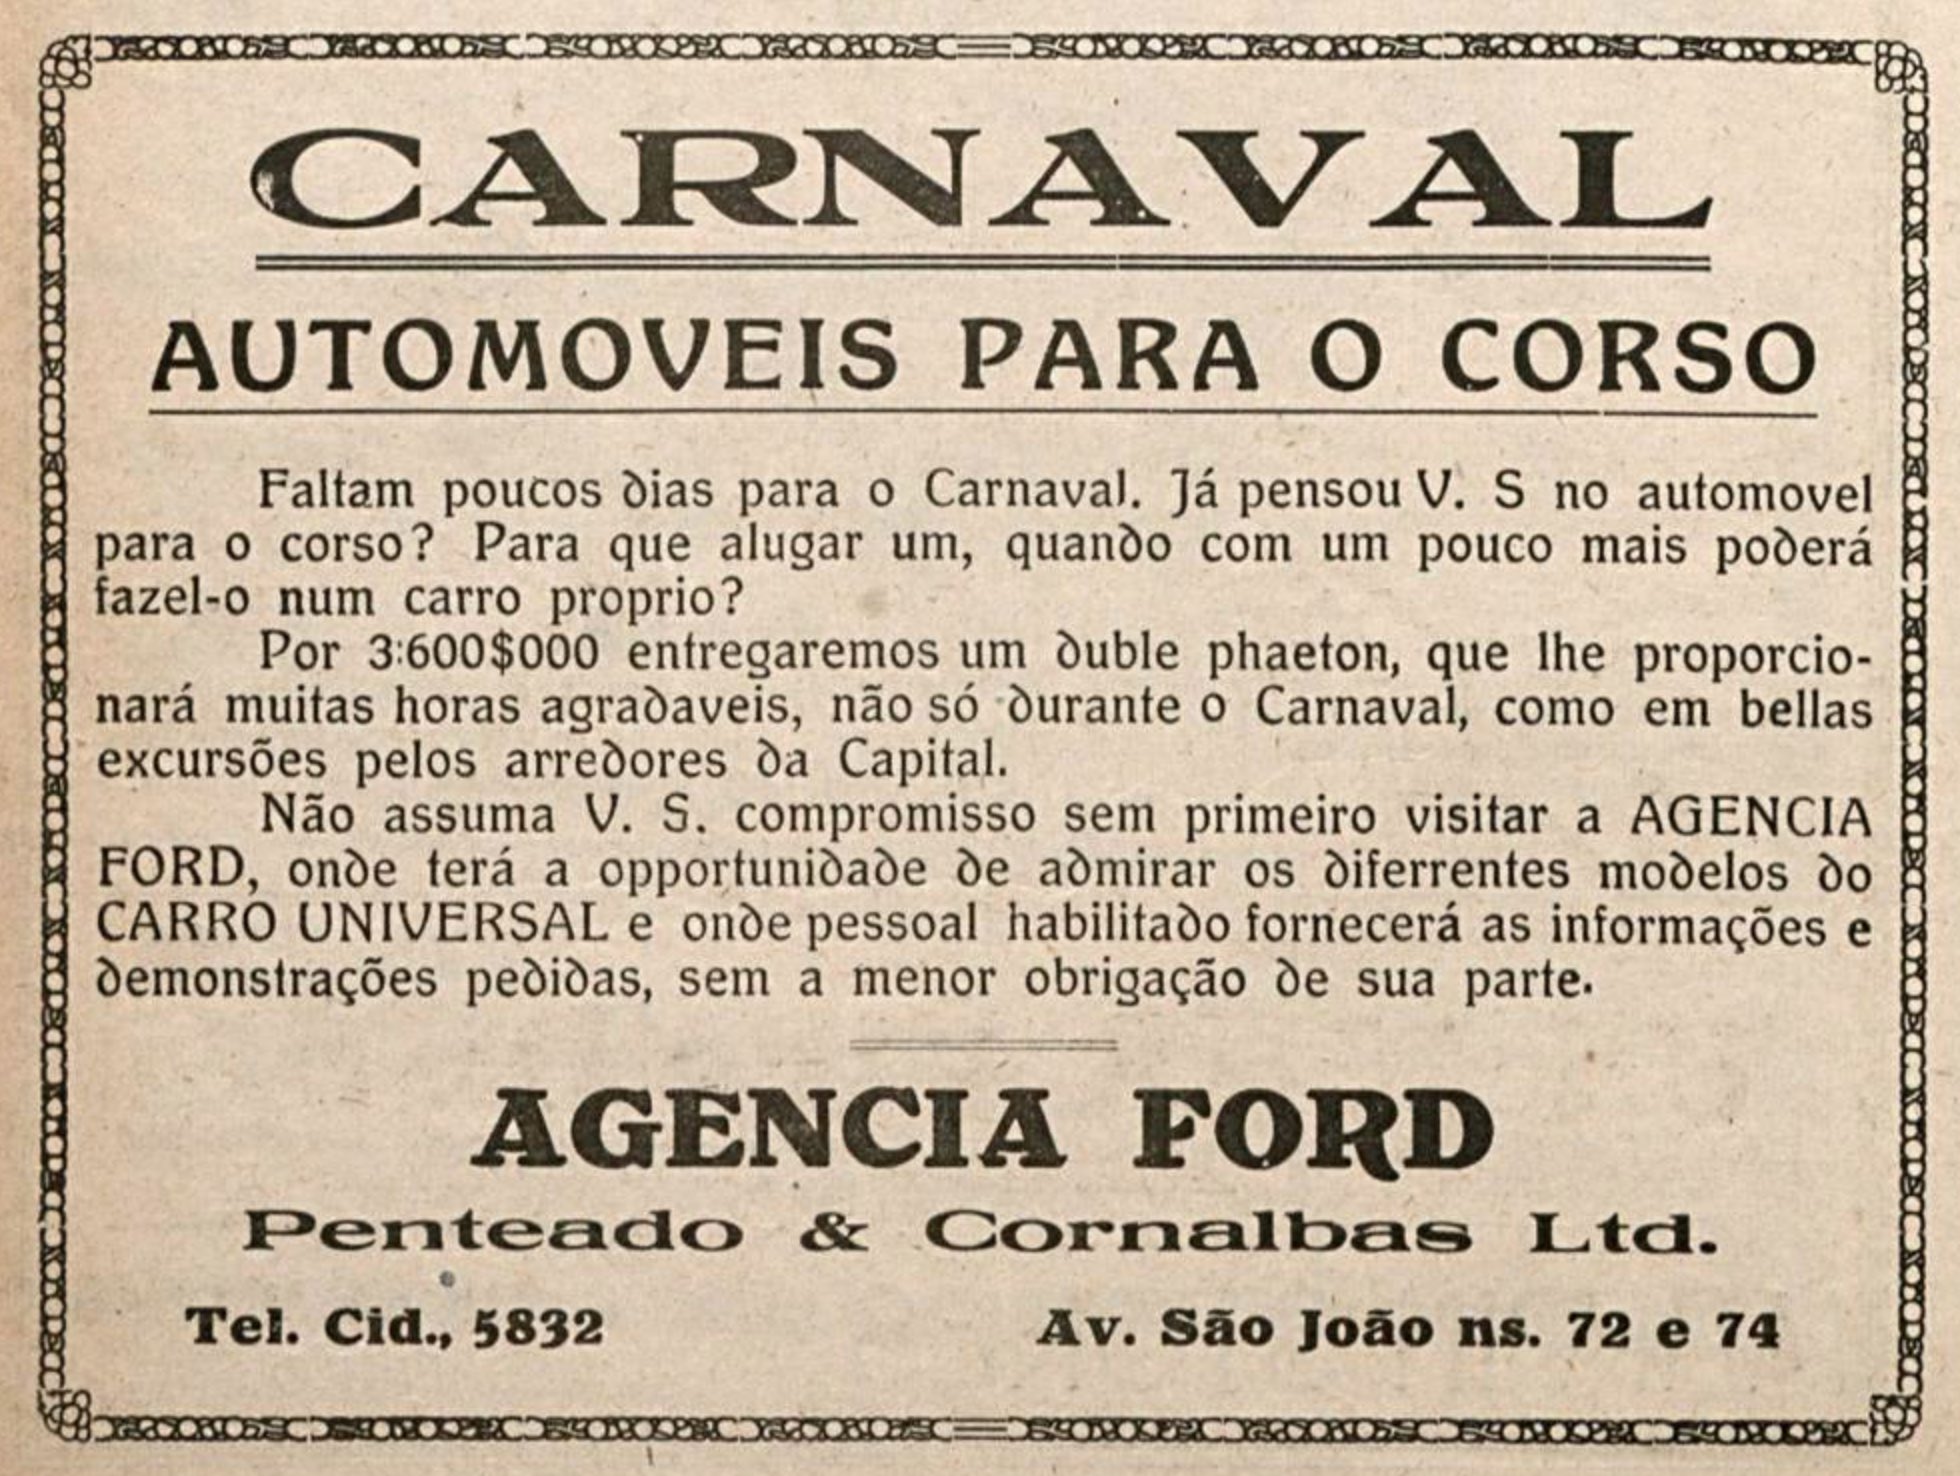 Anúncio de 1920 da agência Ford promovendo automóveis para o corso do carnaval